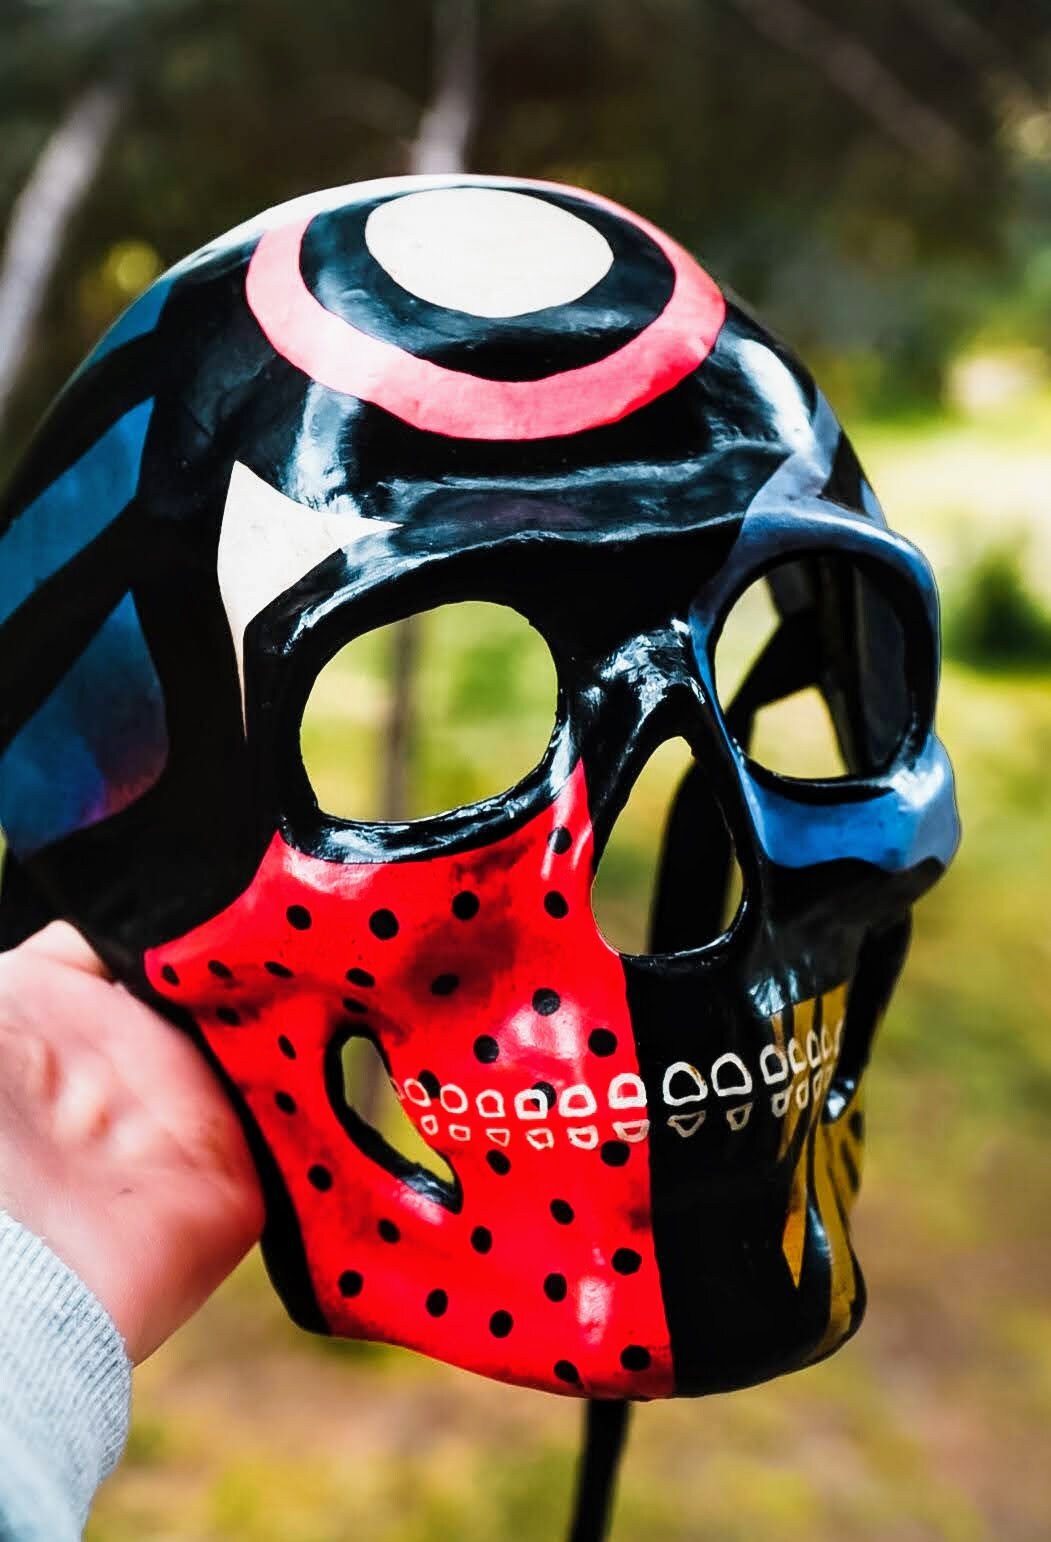 Mask ready - Skull mask Red Black lights venetian style